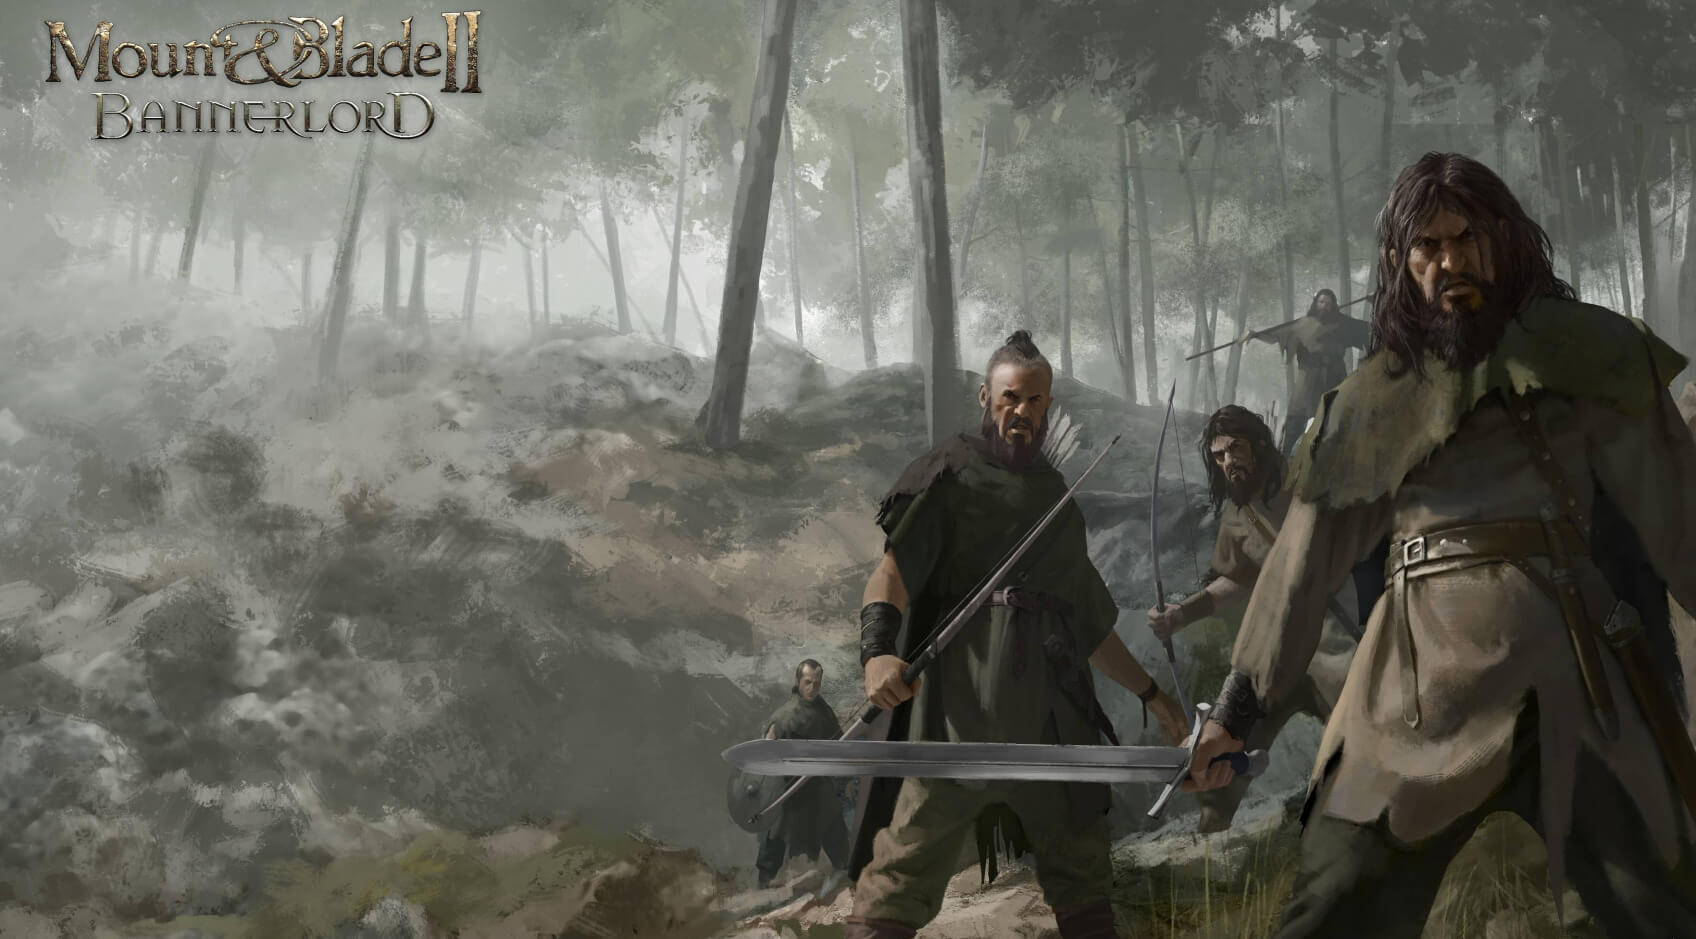 يوجد الآن Dismemberment Mod لـ Mount & Blade II: Bannerlord يمكنك تنزيله 11